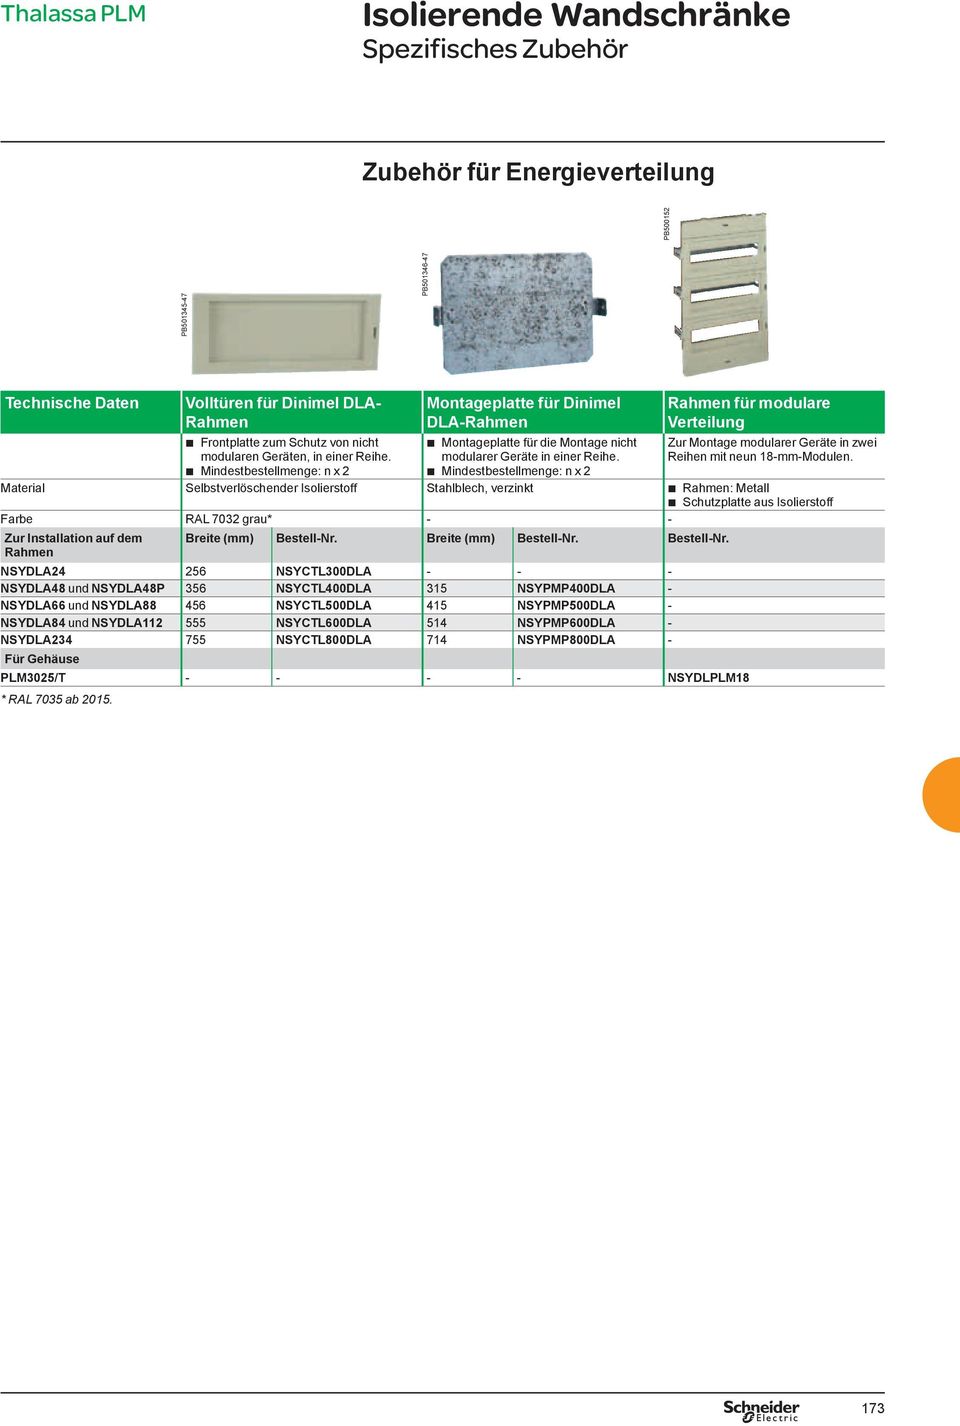 Mindestbestellmenge: n x 2 Rahmen für modulare Verteilung Zur Montage modularer Geräte in zwei Reihen mit neun 18-mm-Modulen.